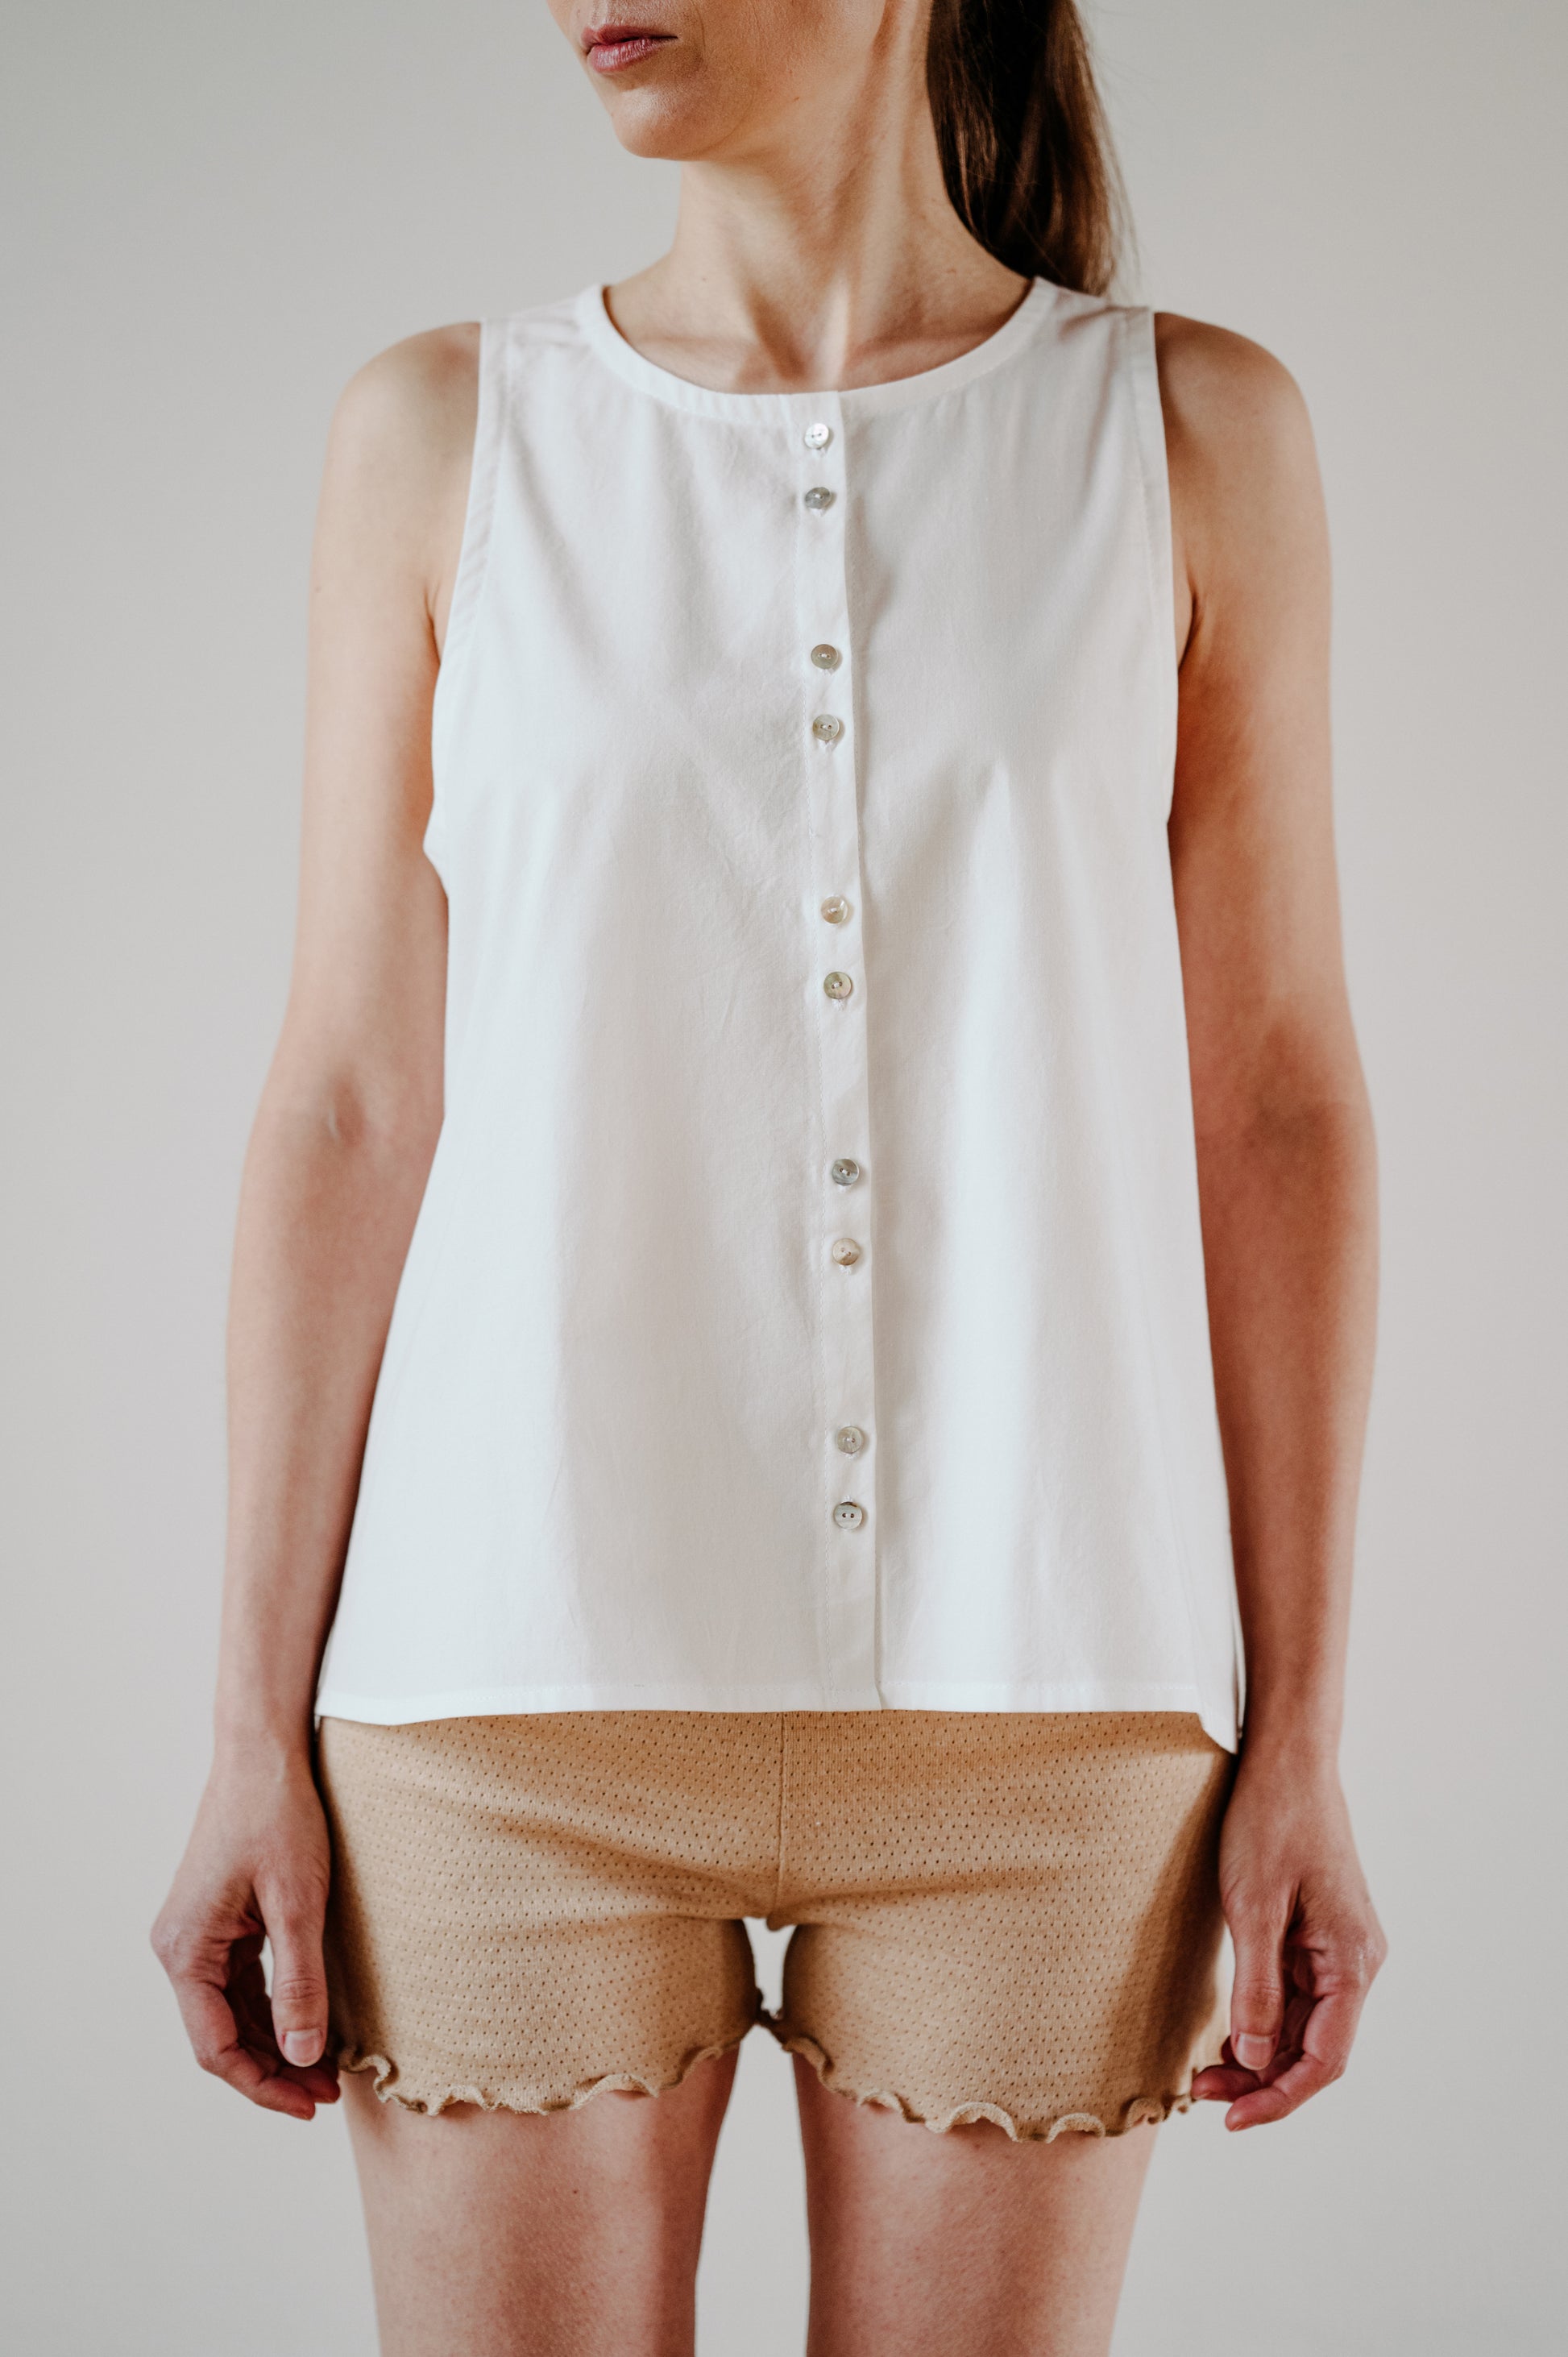 LÁNYKA sleeveless blouse | blúzka bez rukávov - CZULA